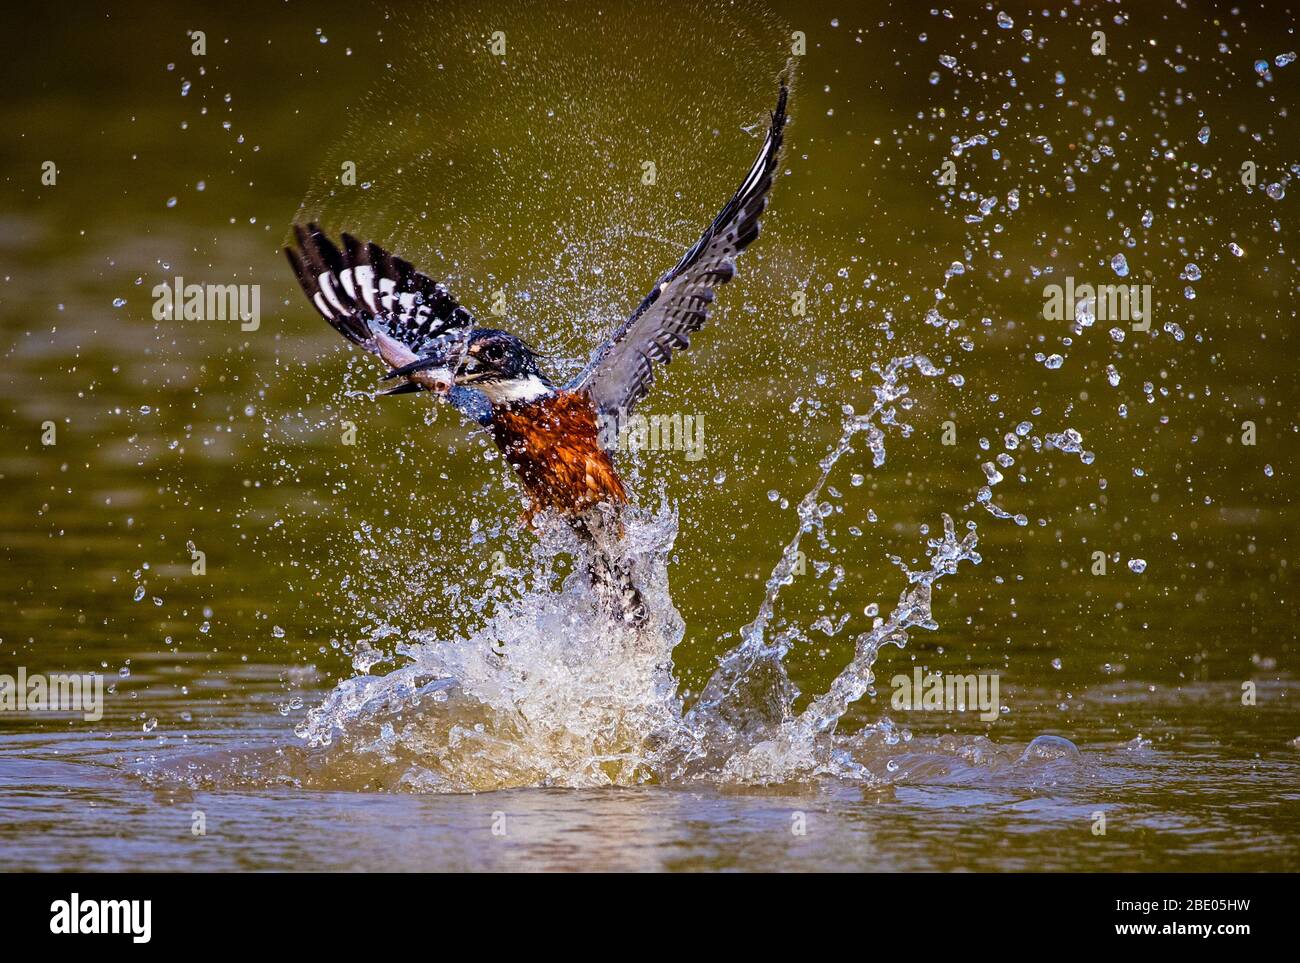 kingfisher annelé (Megaceryle torquata) éclaboussant dans l'eau, Pantanal, Brésil Banque D'Images